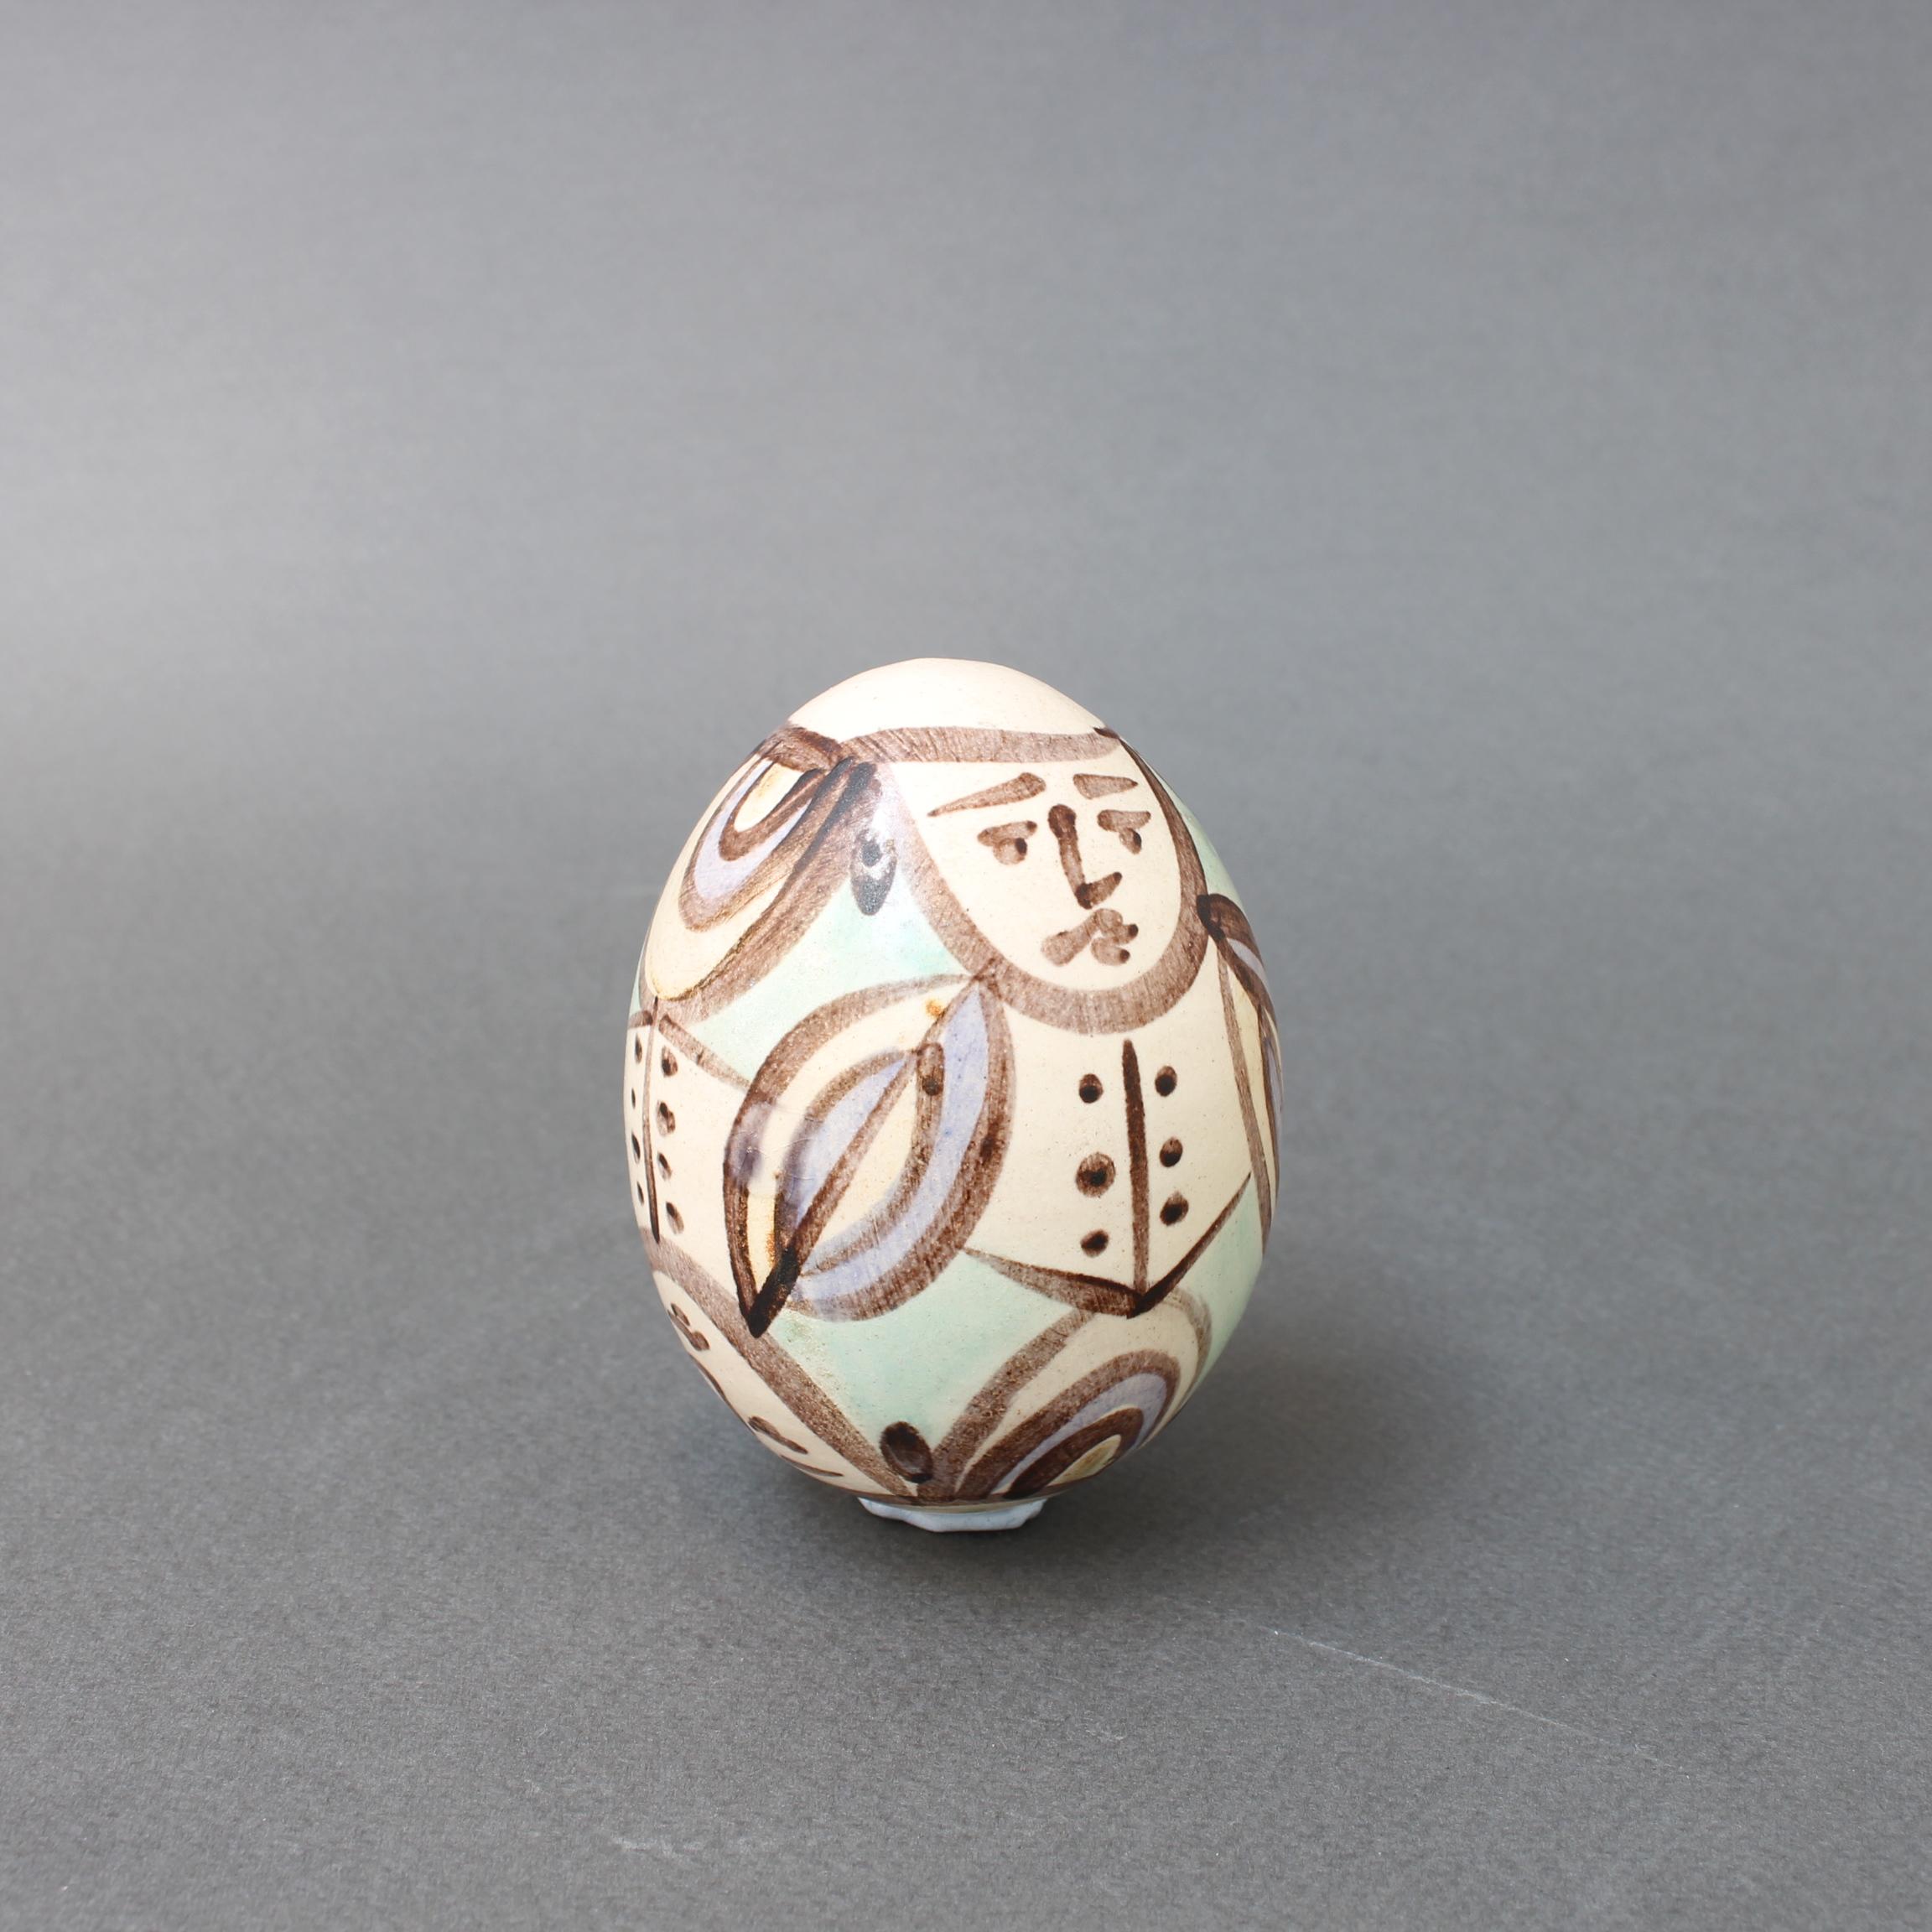 Œuf en céramique vintage de l'Atelier Madoura, Vallauris, France (vers les années 1960). Cette figurine en céramique de la taille d'un œuf est peinte avec un homme stylisé en costume au visage froncé. Il s'agit d'une œuvre peinte simplement mais